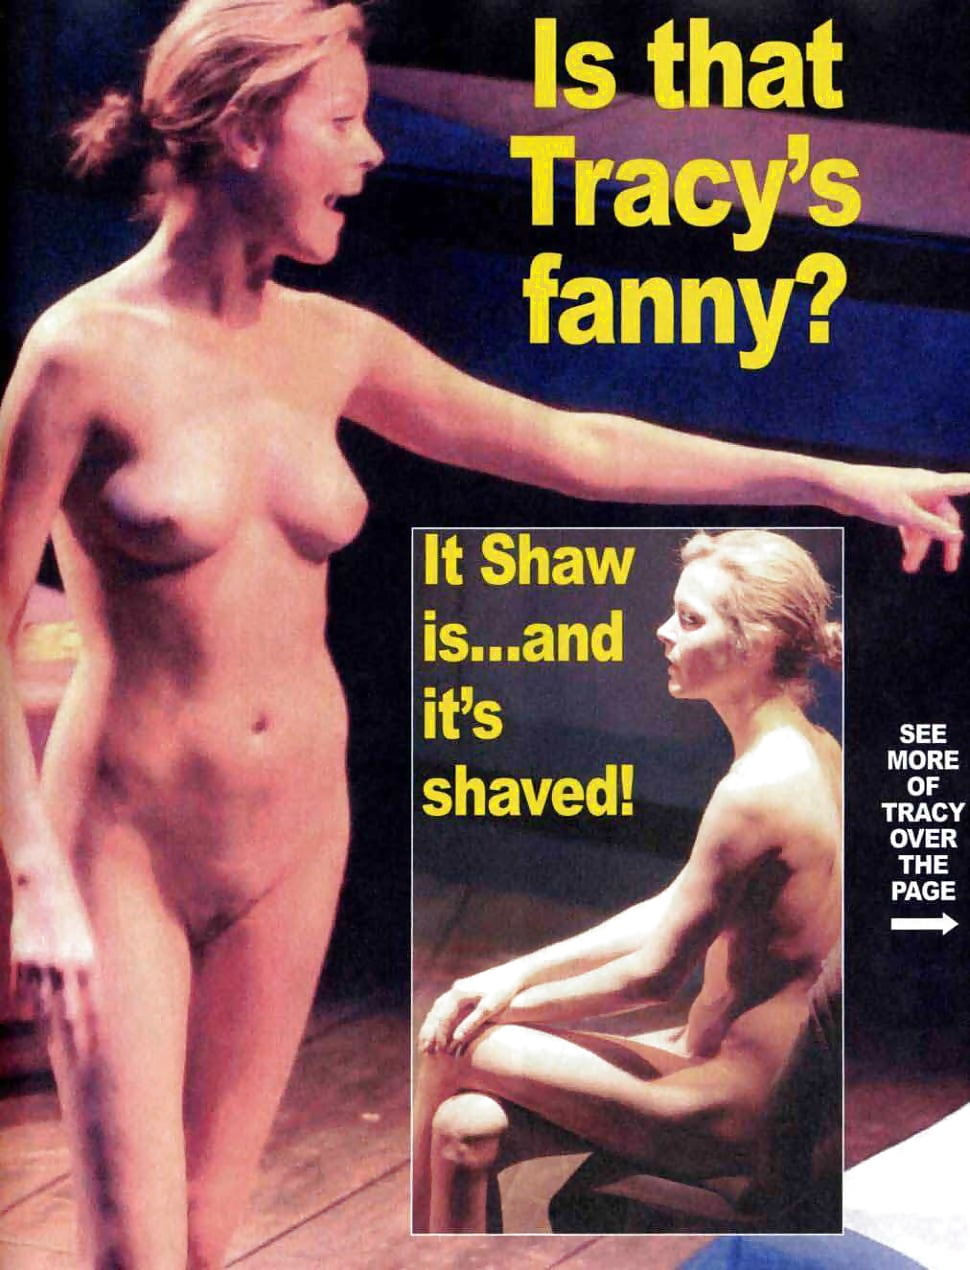 Ver Tracy Shaw - 29 fotos en xHamster.com xHamster es el mejor sitio porno ...